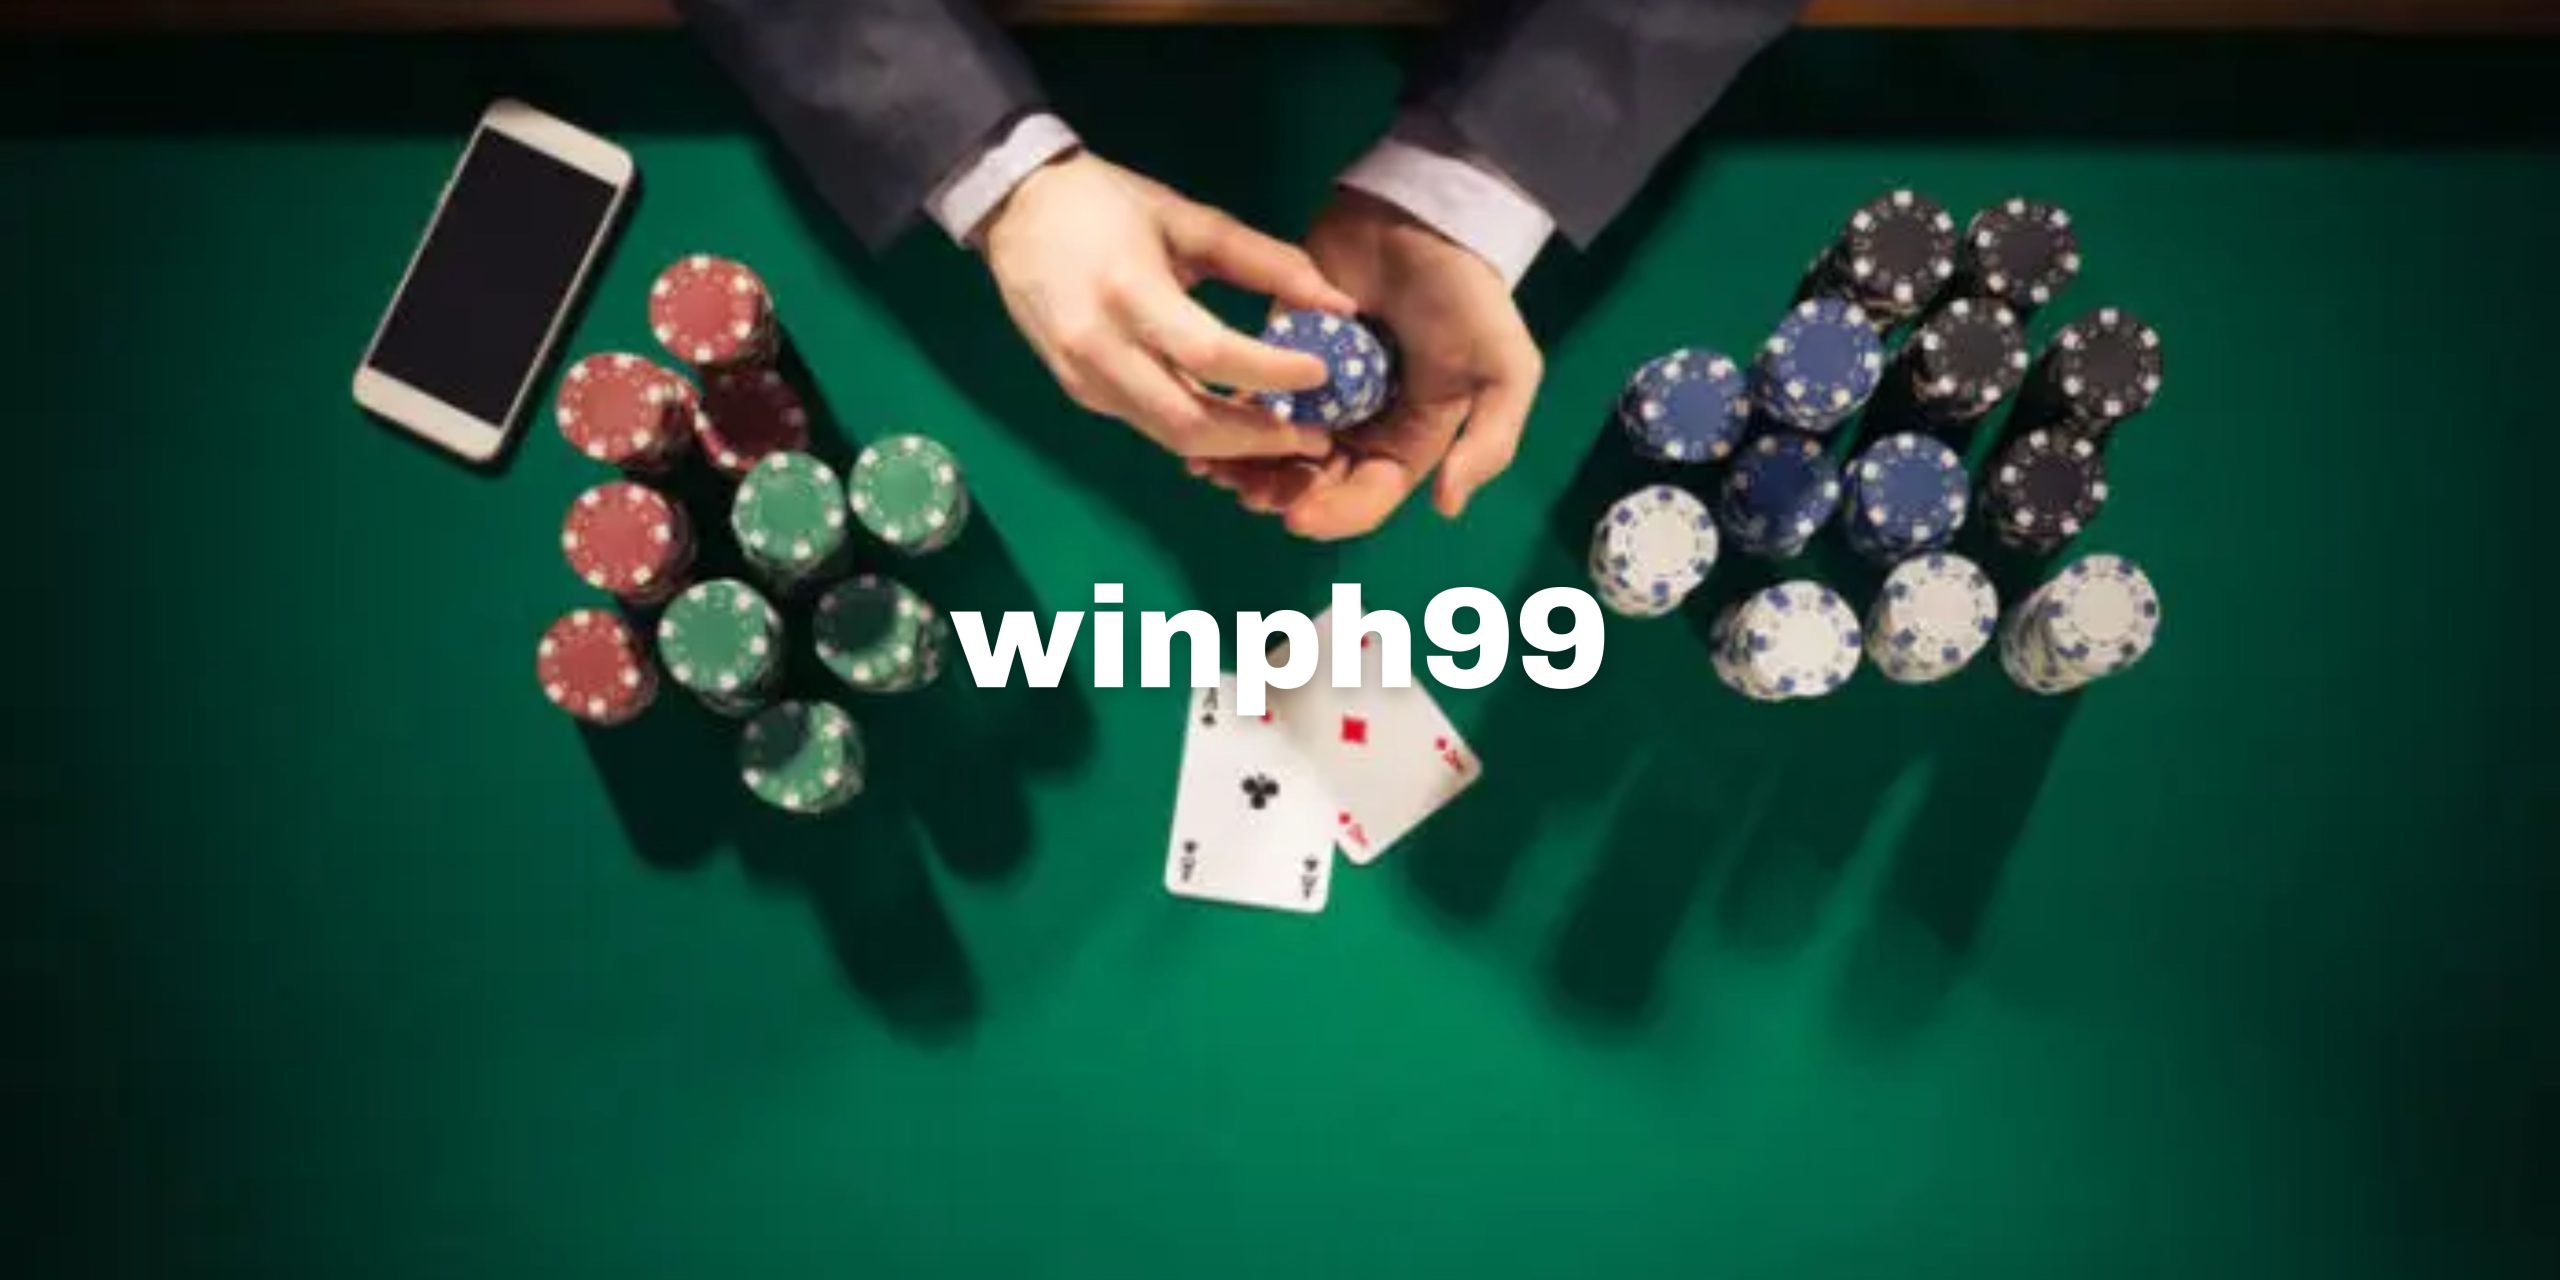 winph99